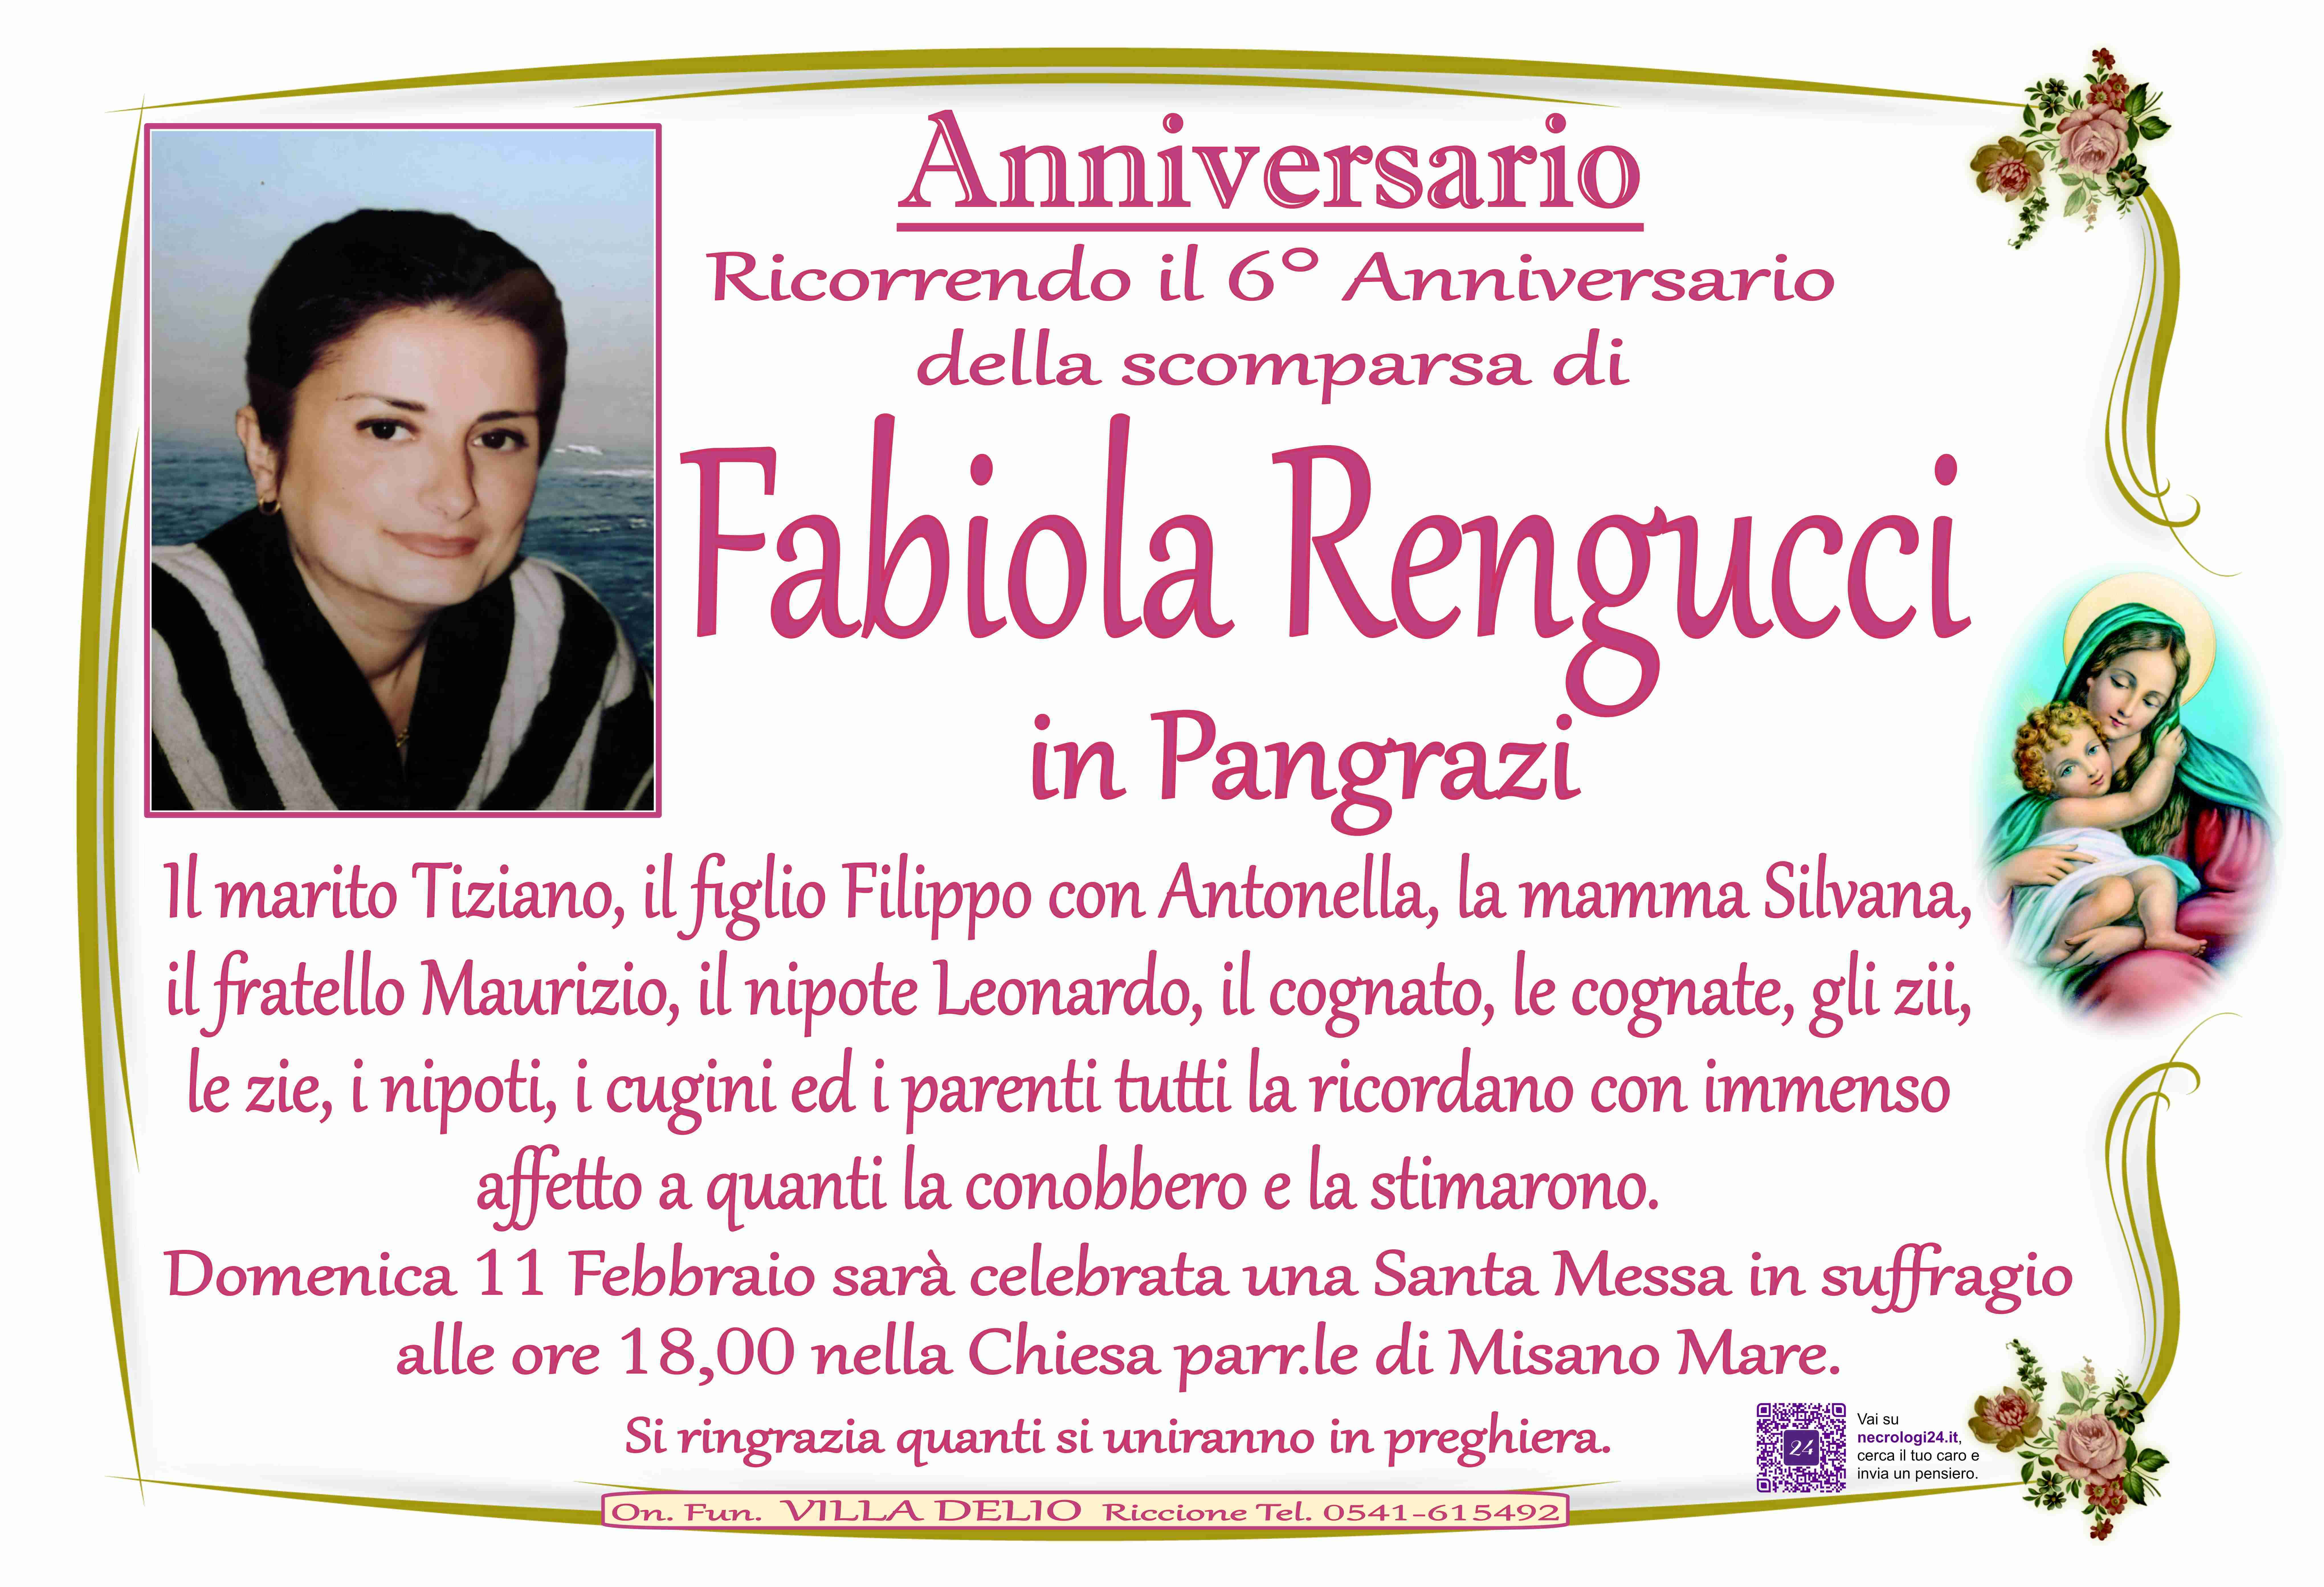 Fabiola Rengucci in Pangrazi